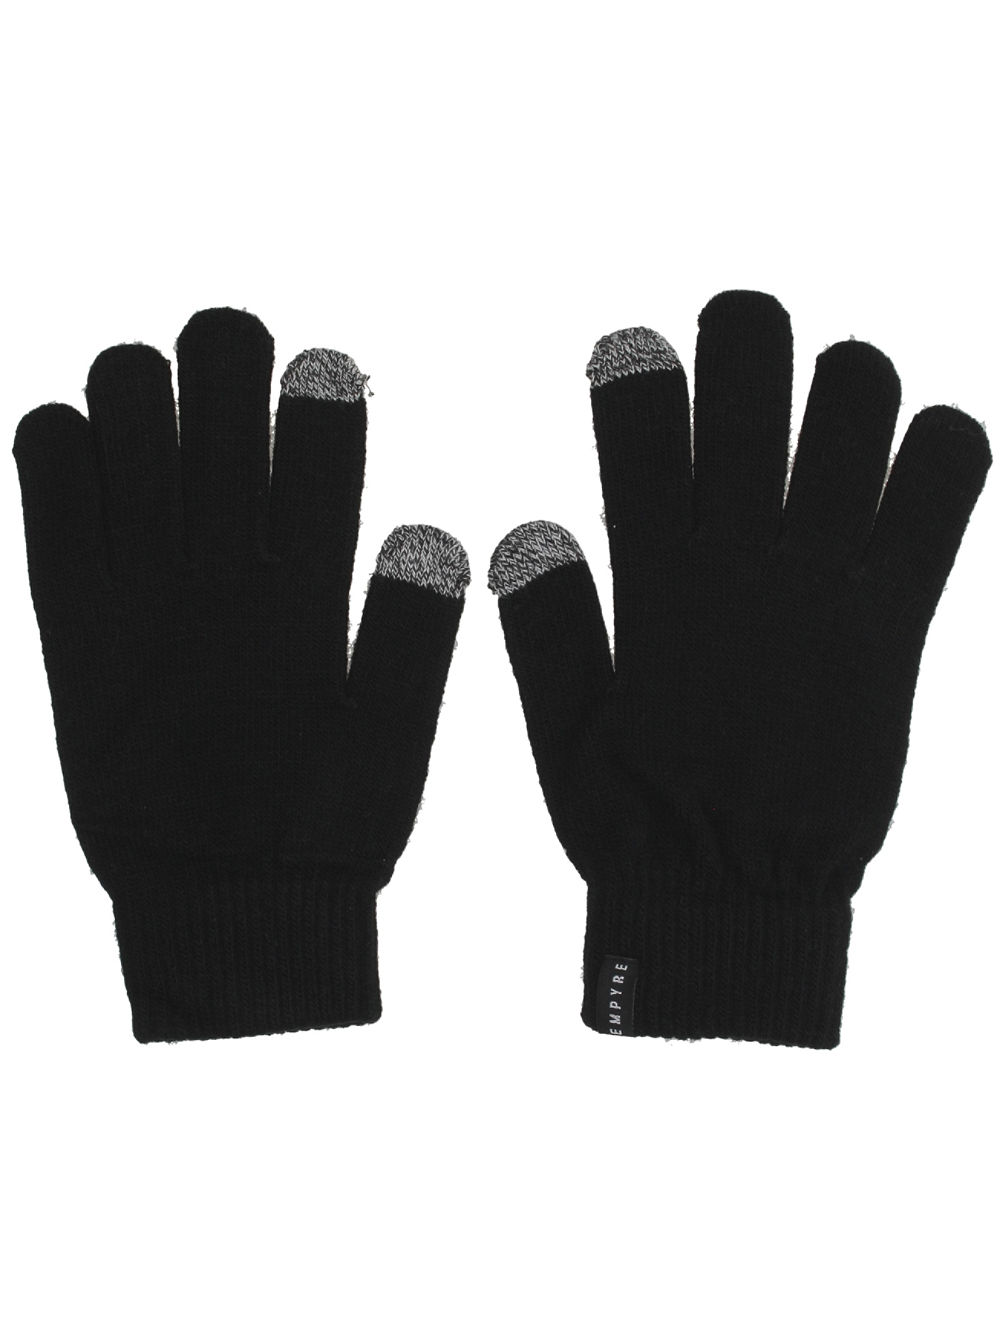 Techy Pipe Handschuhe